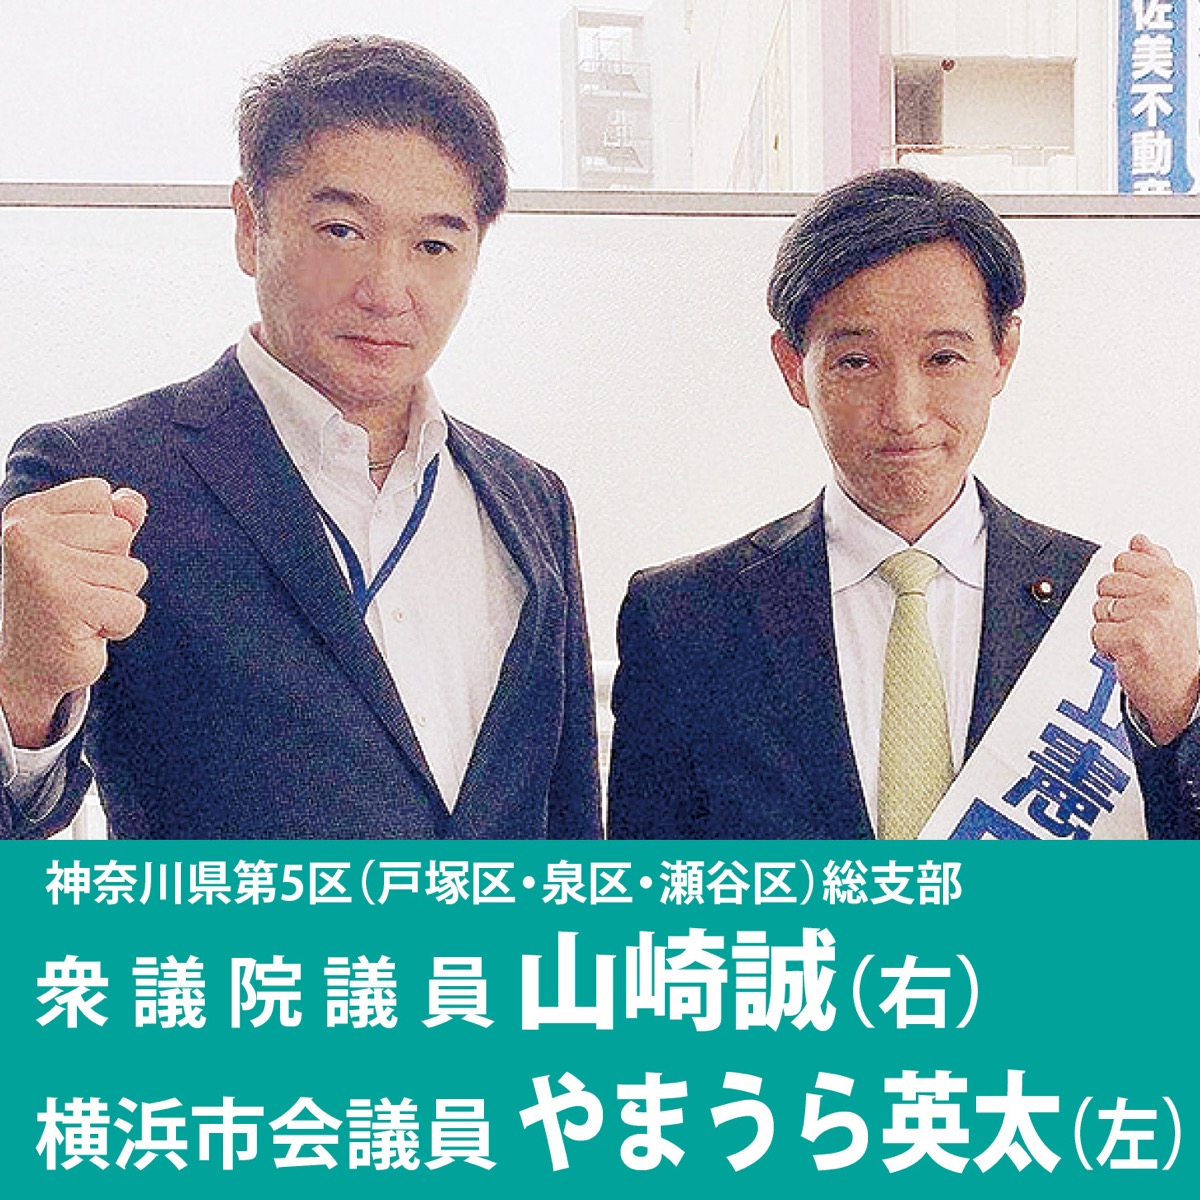 対談 横浜カジノ誘致の是非問う住民投票を！